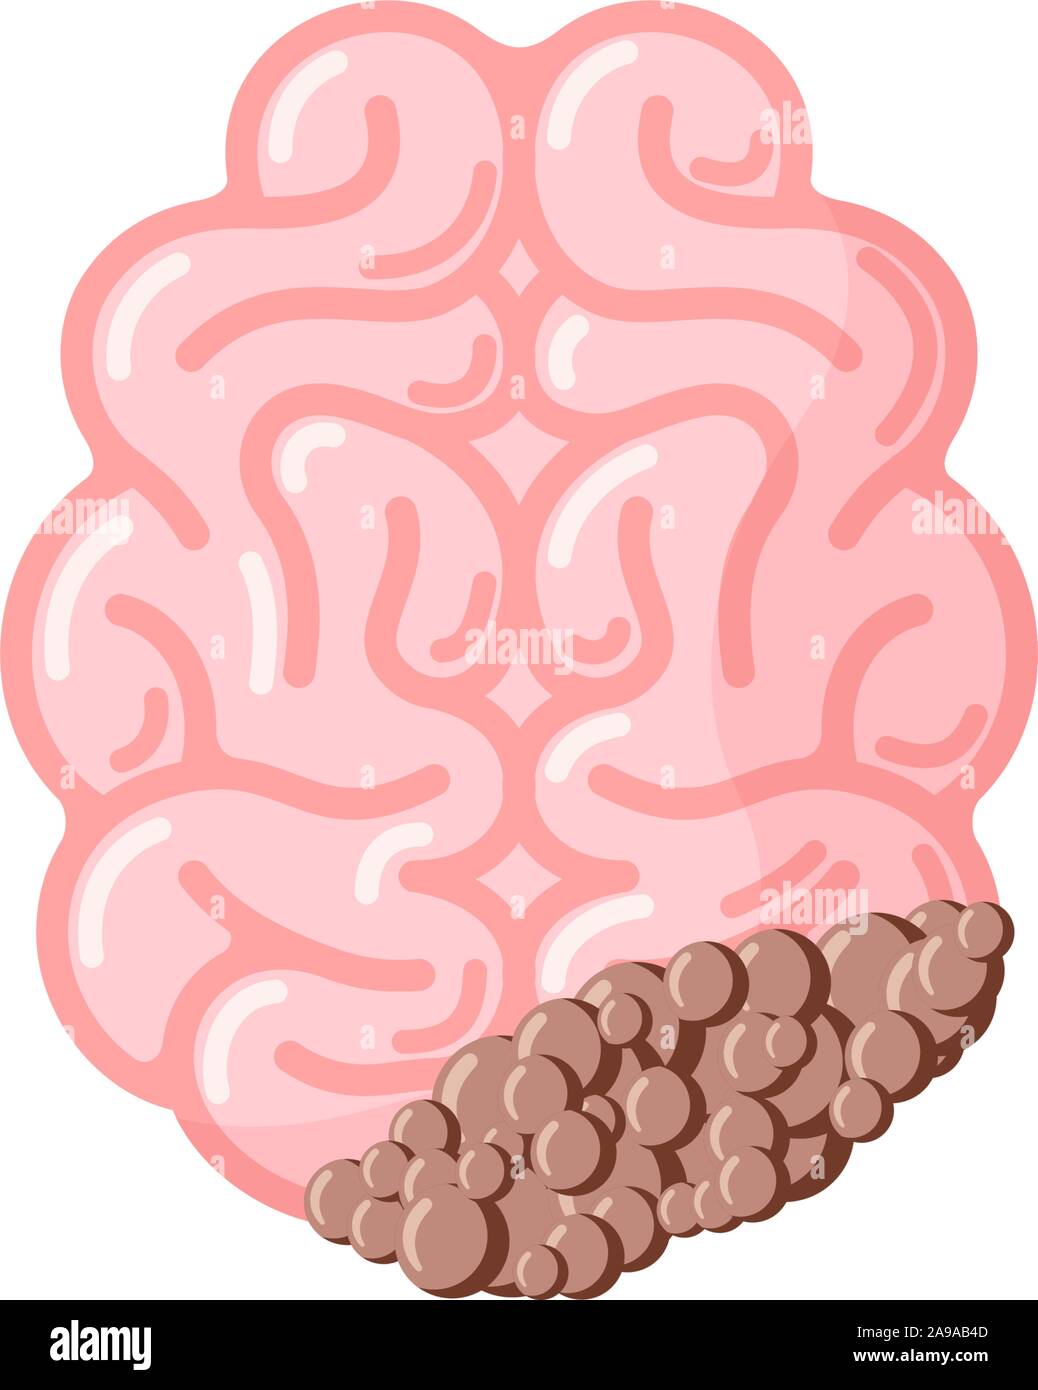 Cervello umano con cancro tumore. Malati subisca dei danni nel sistema nervoso centrale organo. Vettore illustrazione eps Illustrazione Vettoriale